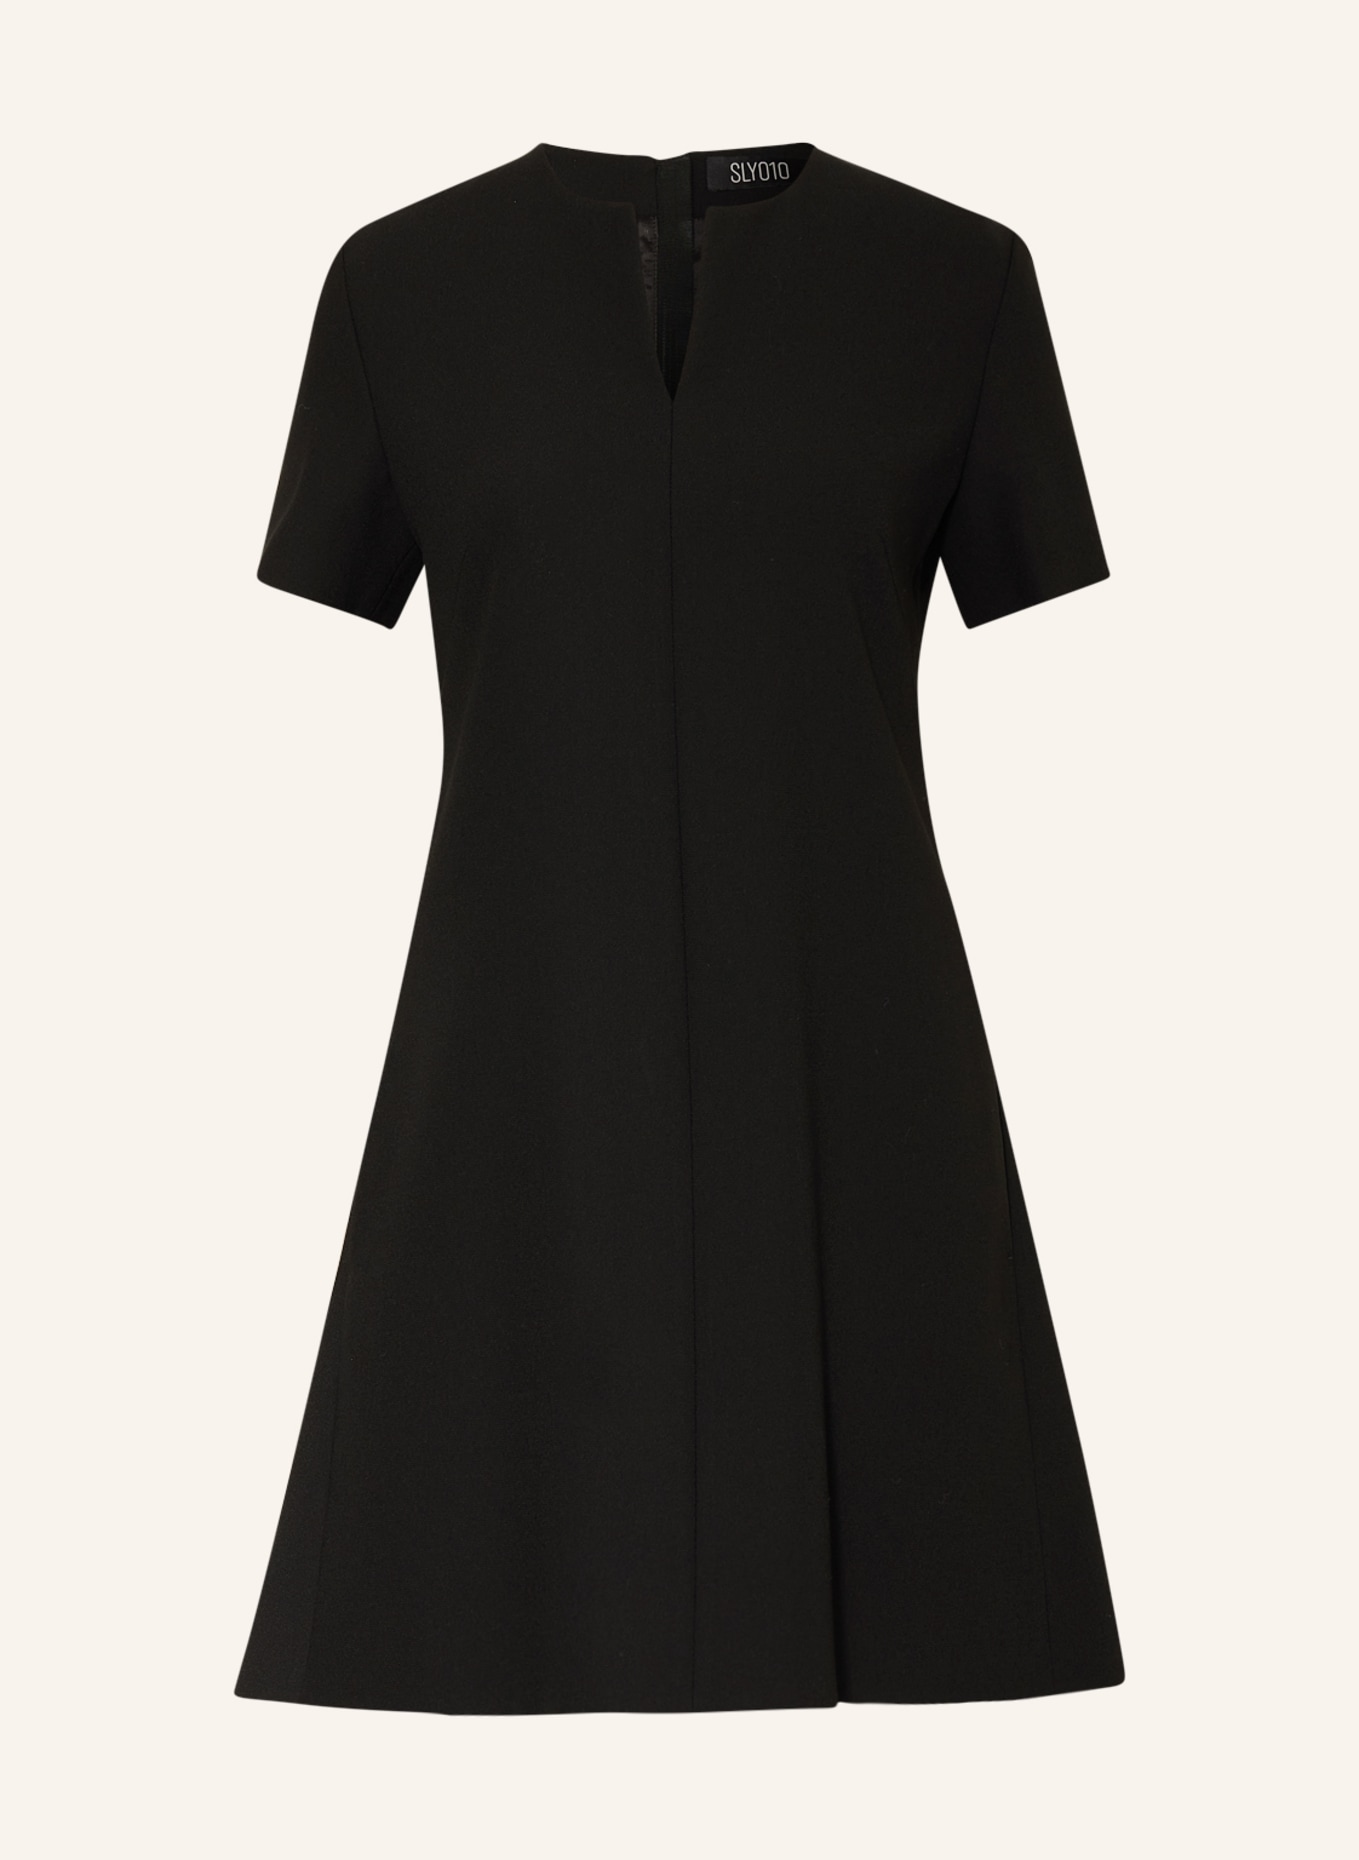 SLY 010 Dress, Color: BLACK (Image 1)